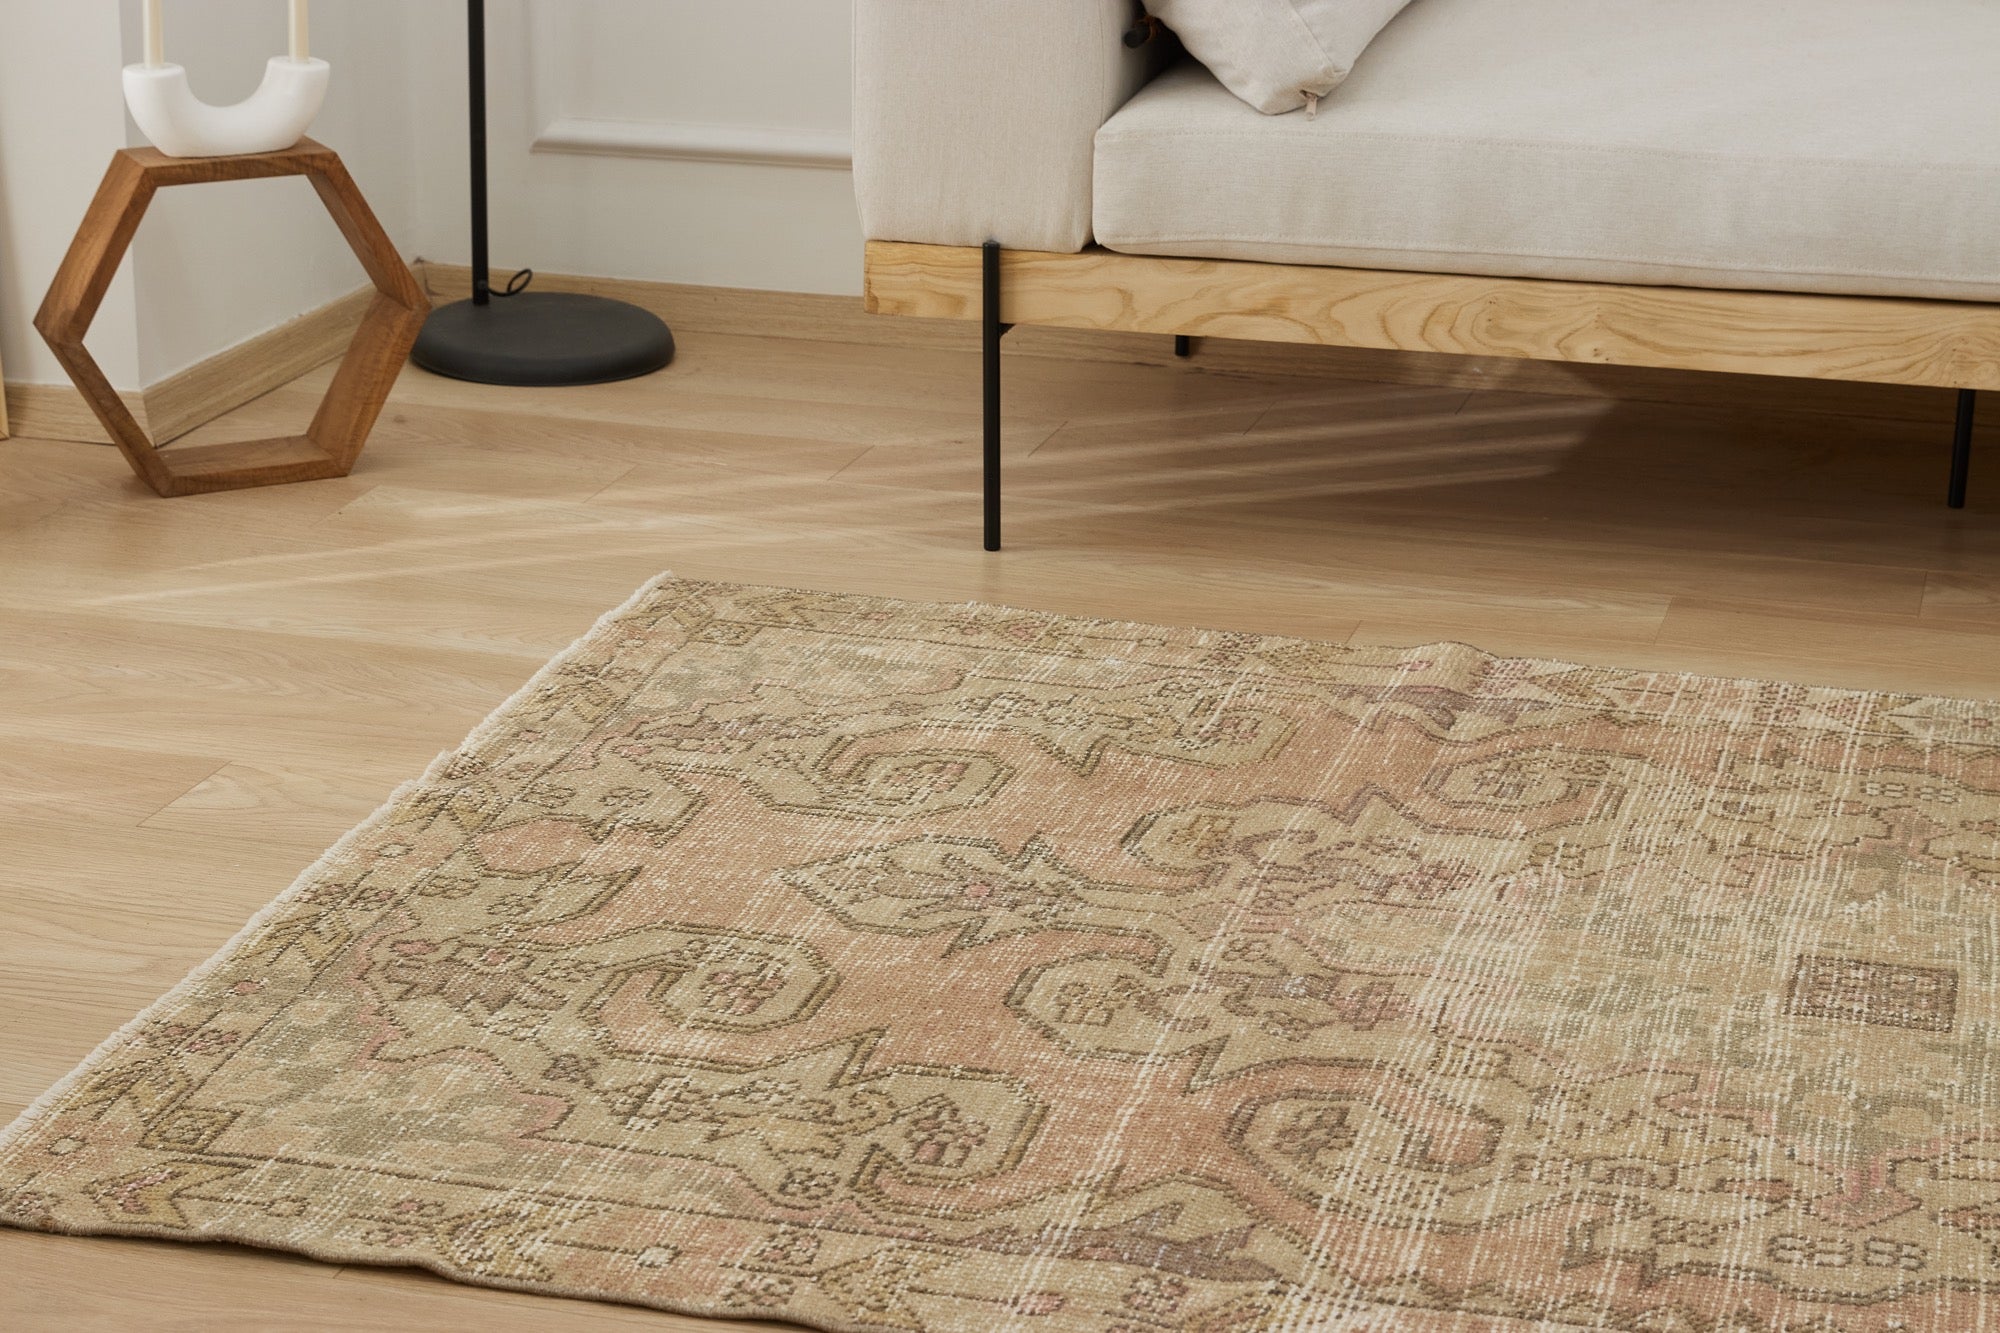 Kali | Time-Honored Turkish Rug | Artisanal Carpet Mastery | Kuden Rugs